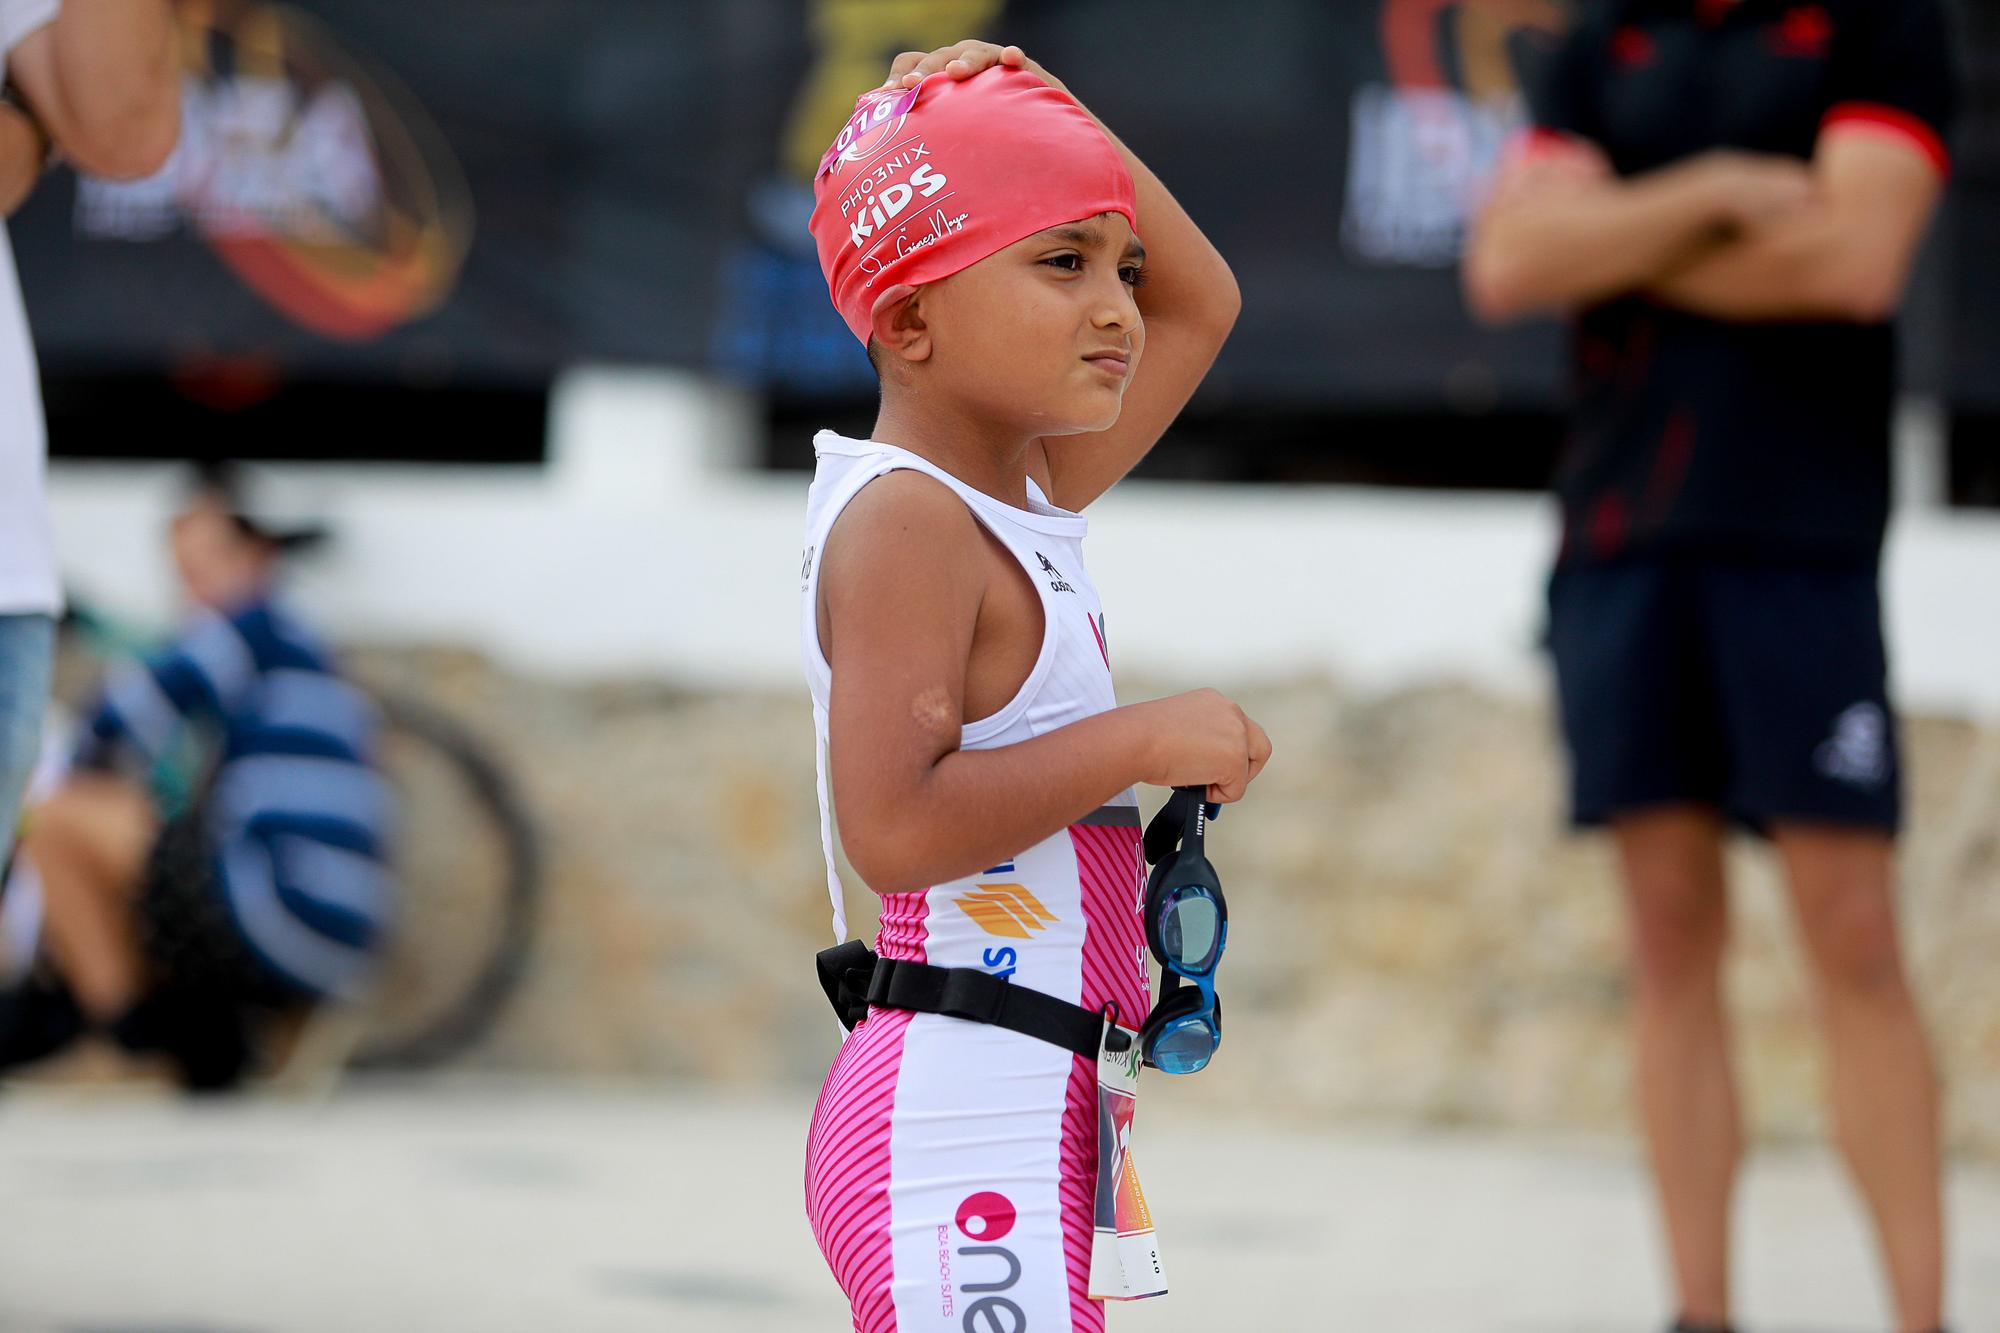 Las imágenes del 'Pho3nix kids by Javier Gómez Noya' en Ibiza